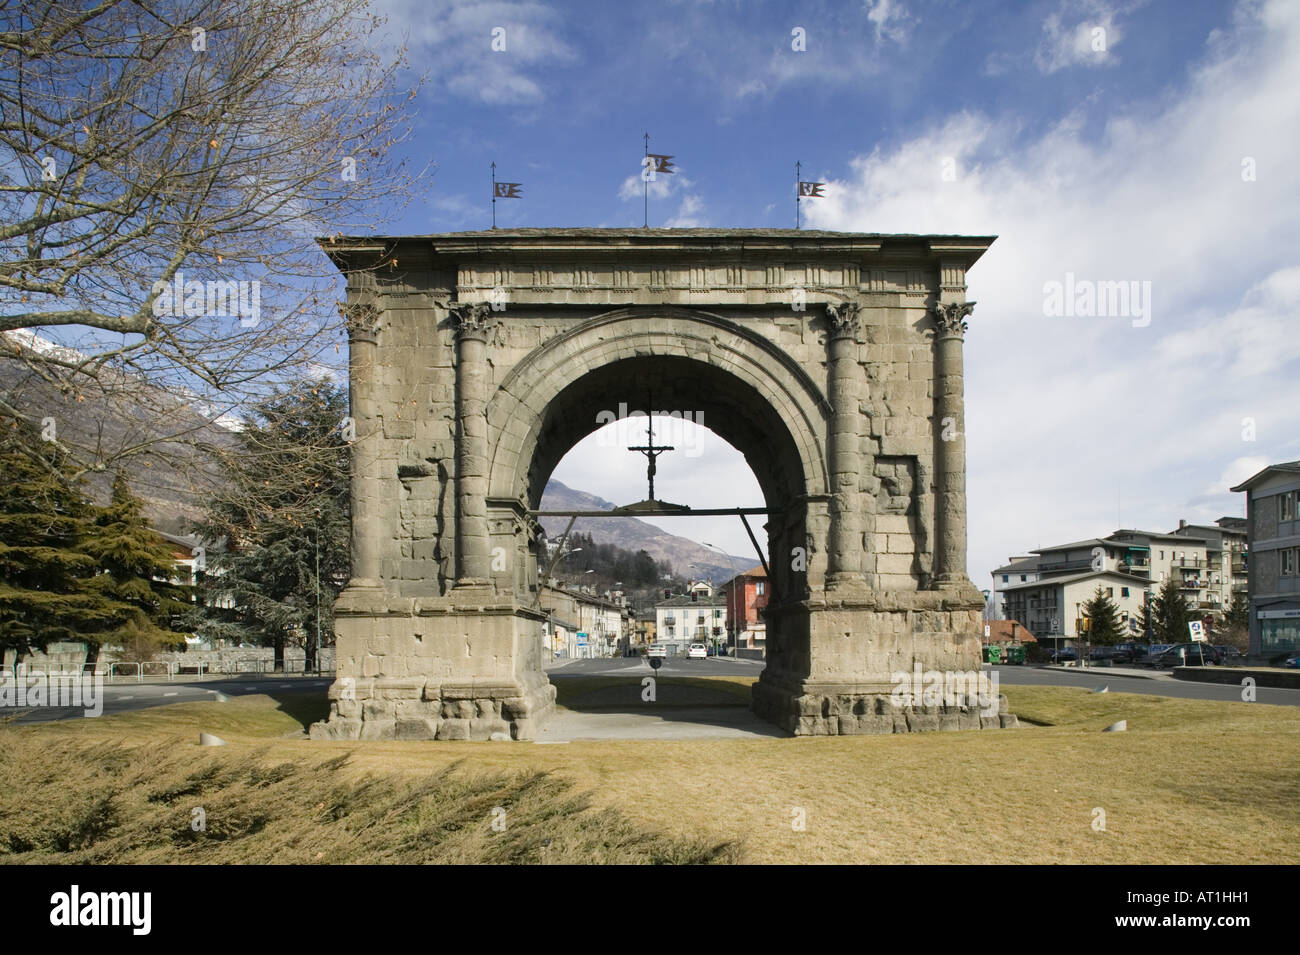 L'Europe, Italie, Val d'Aoste, Aoste : Arco di Augusto / Roman Arch et symbole de la ville d'hiver / Banque D'Images